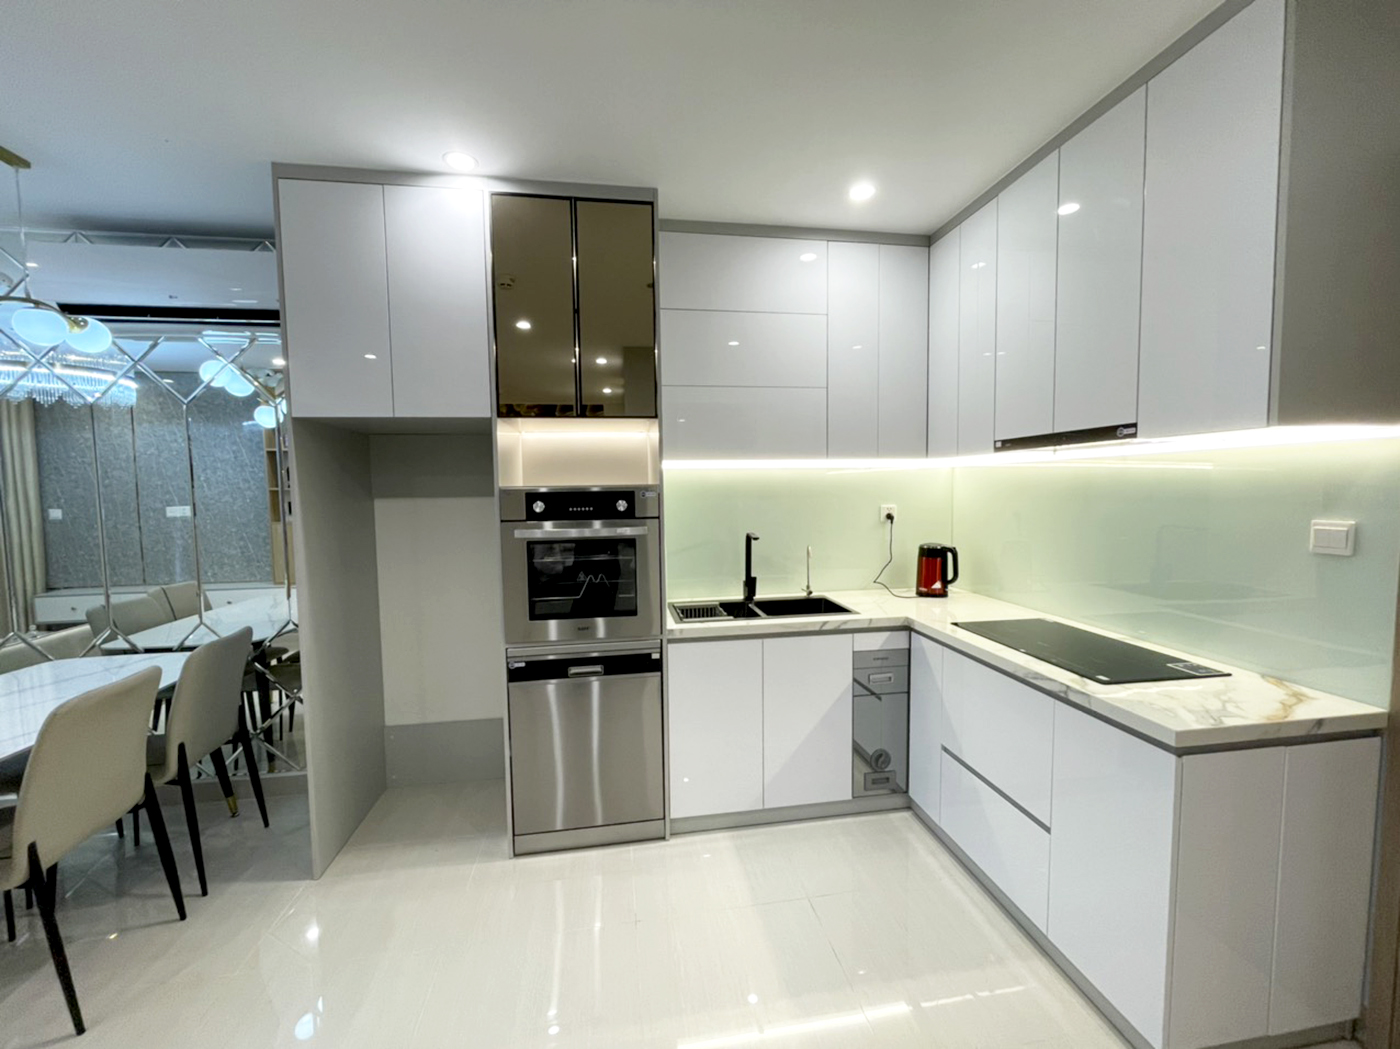 Phòng bếp, phong cách Hiện đại Modern, hoàn thiện nội thất, căn hộ The Origami